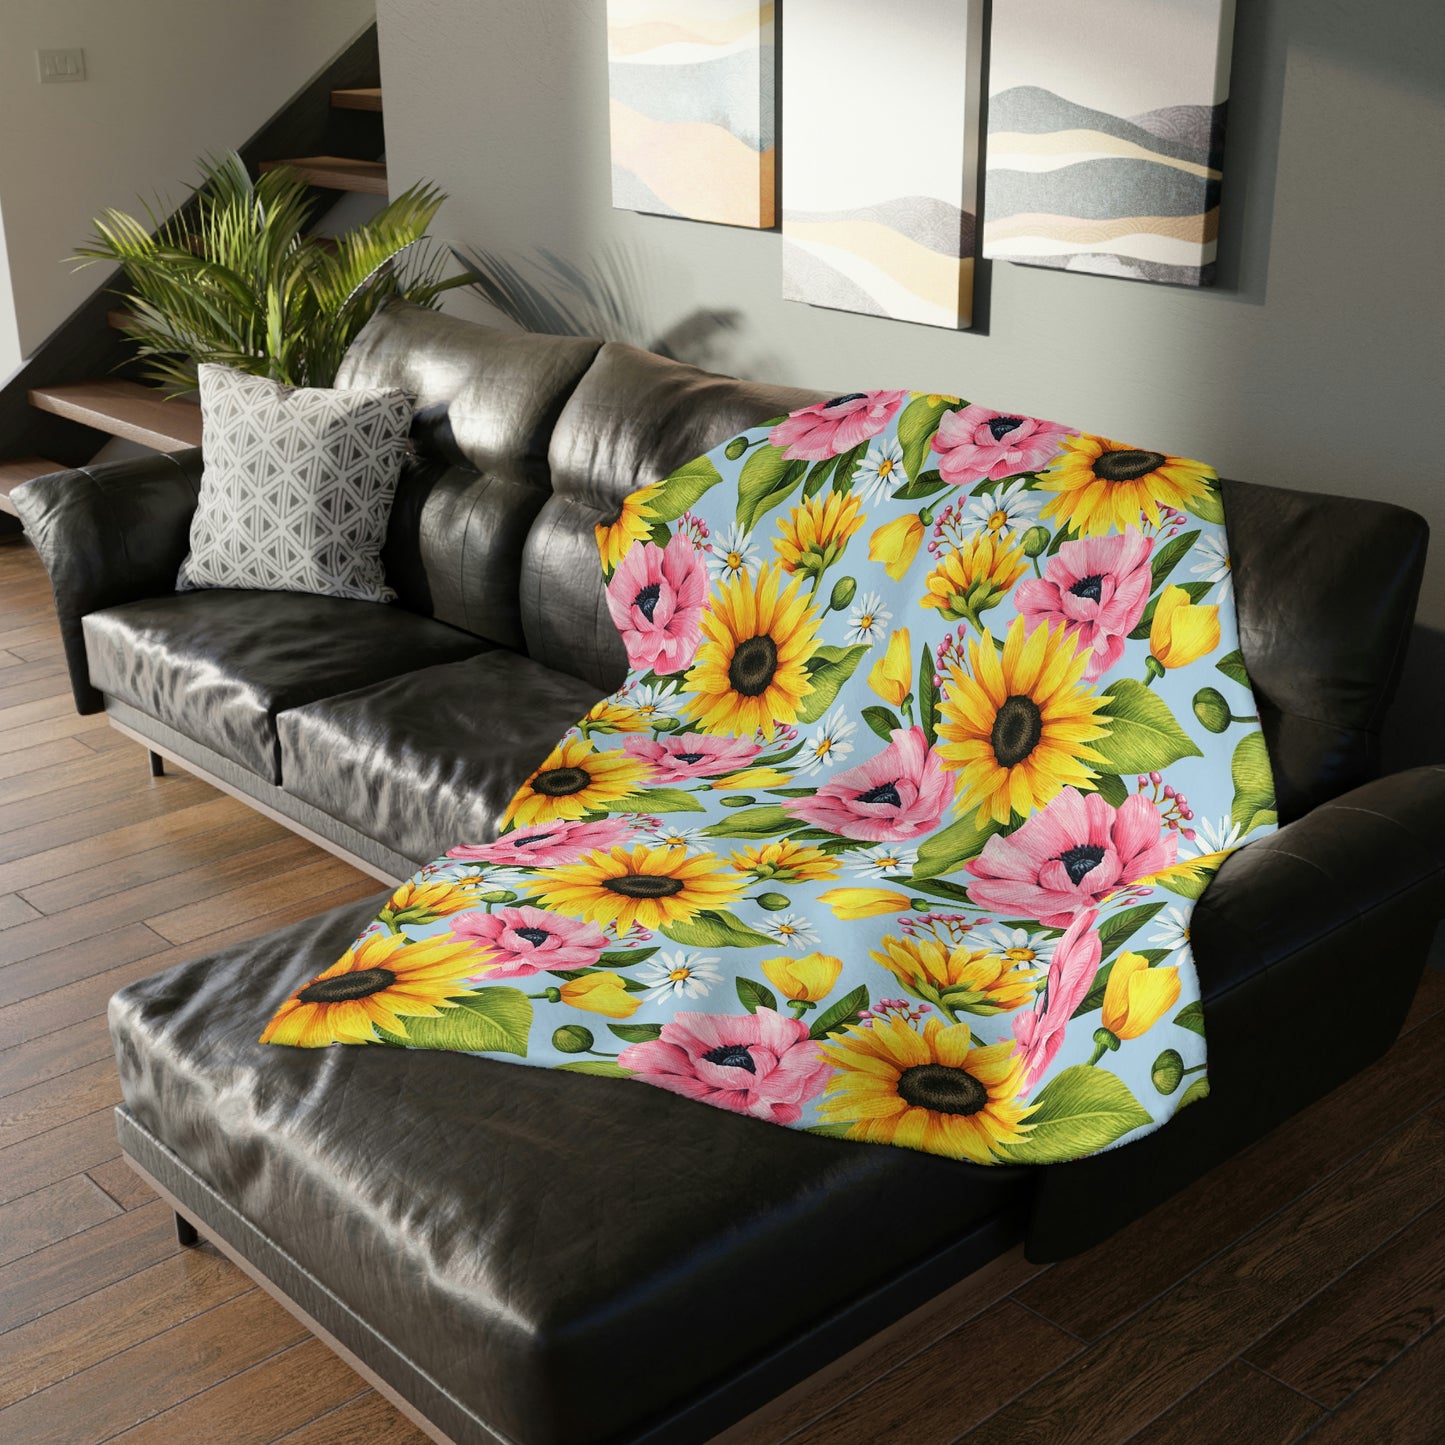 Sunflowers Velveteen Minky Blanket (Two-sided print)